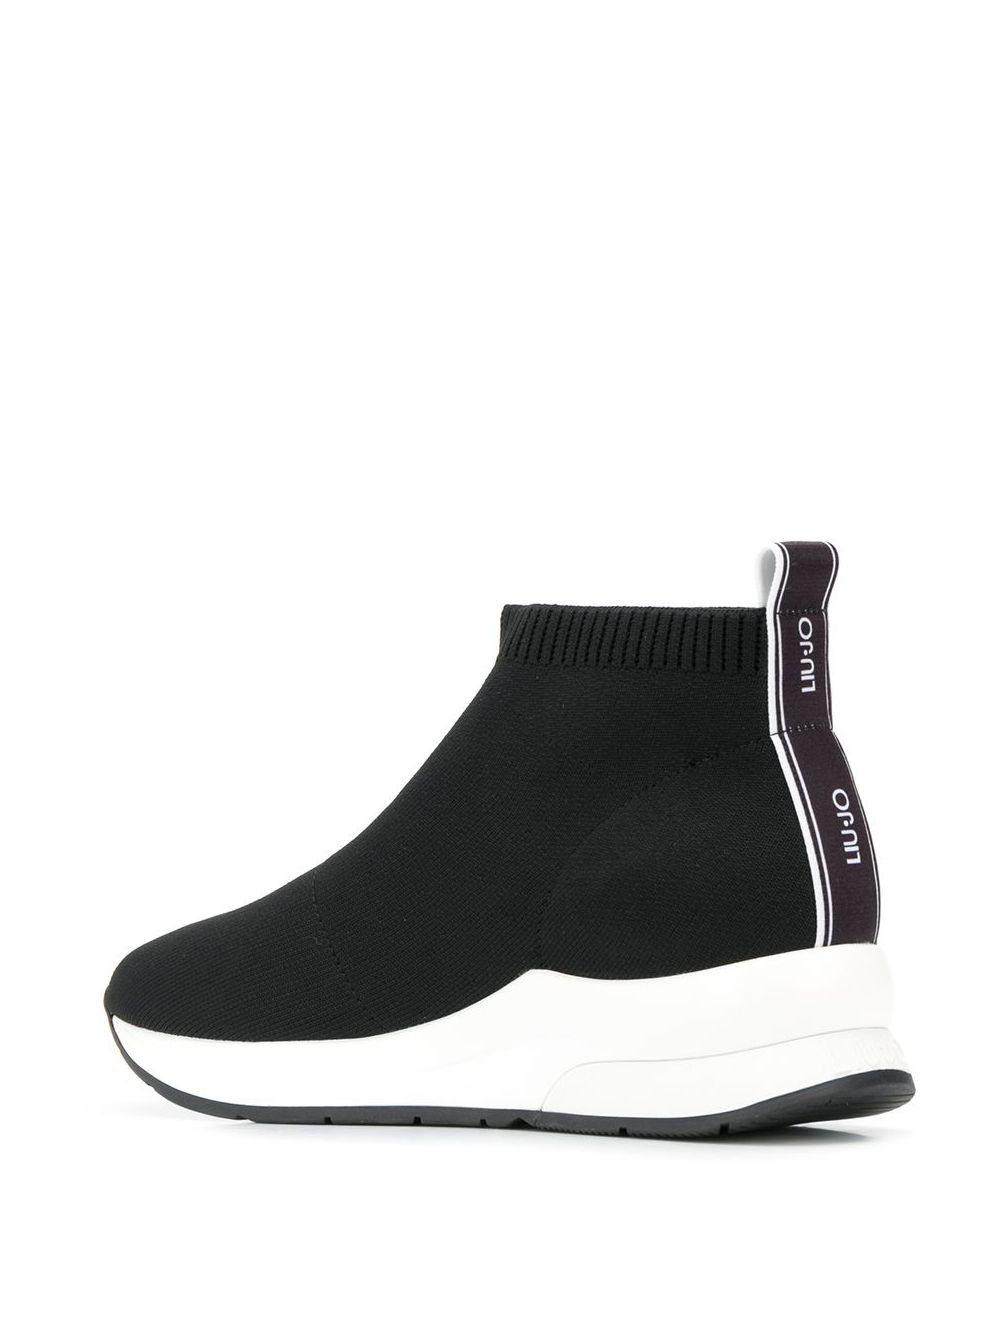 LIU JO Knit Style Sock Sneakers - Farfetch